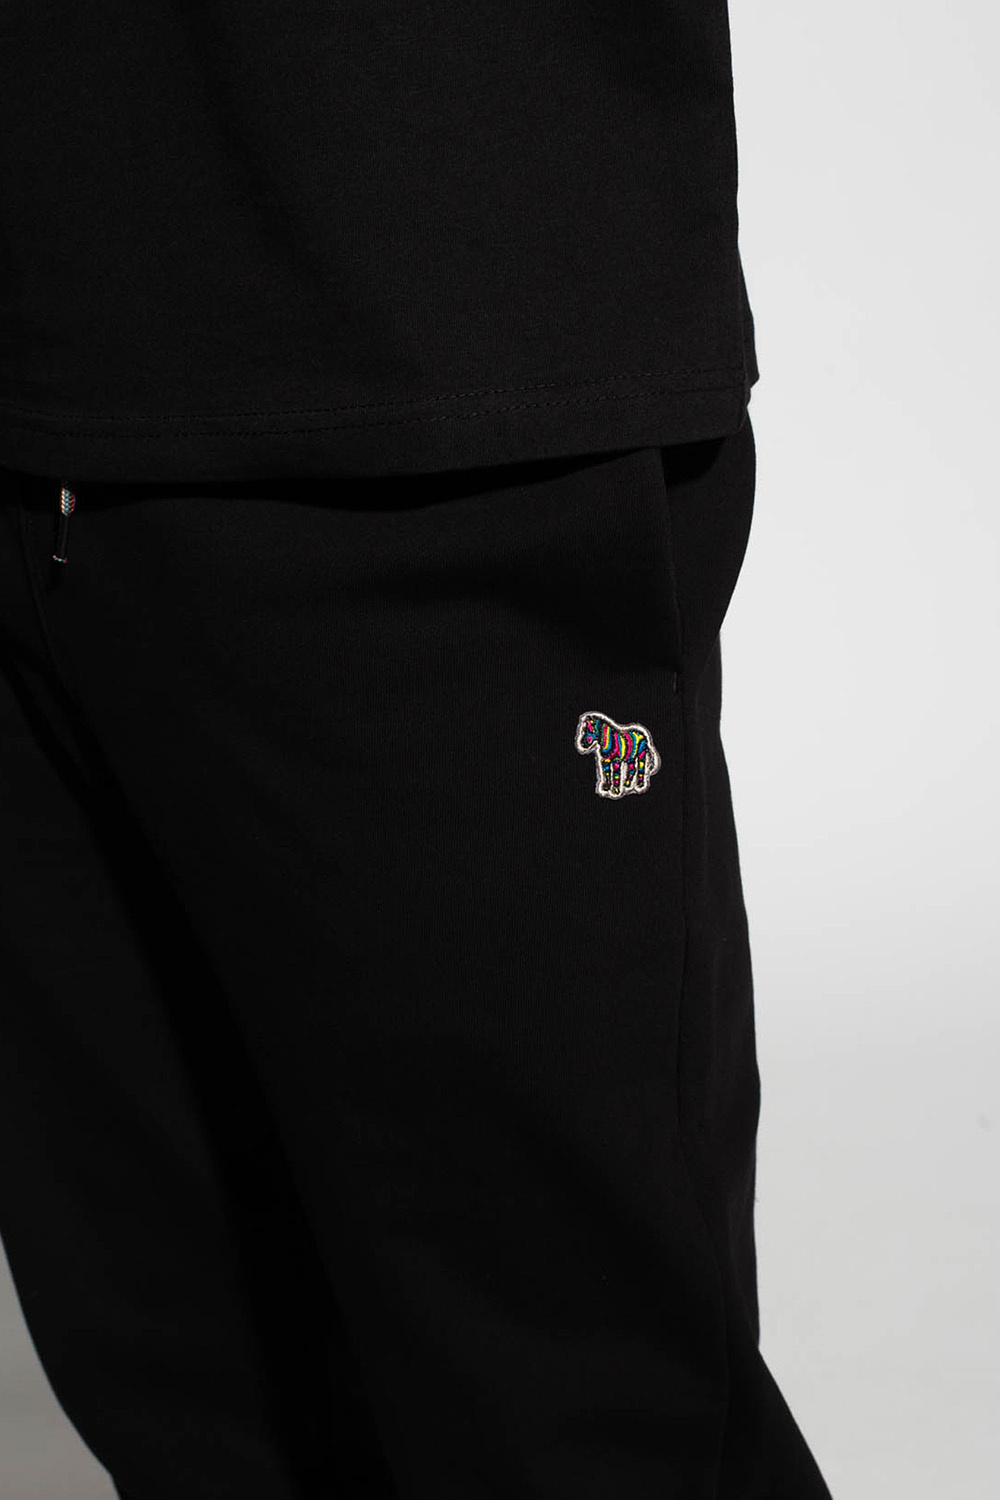 Nike Sportswear Trend Sneaker Pants Wersace Shorts Złota Elastyczna Talia z Greca One Back Pocket Ovel Druku